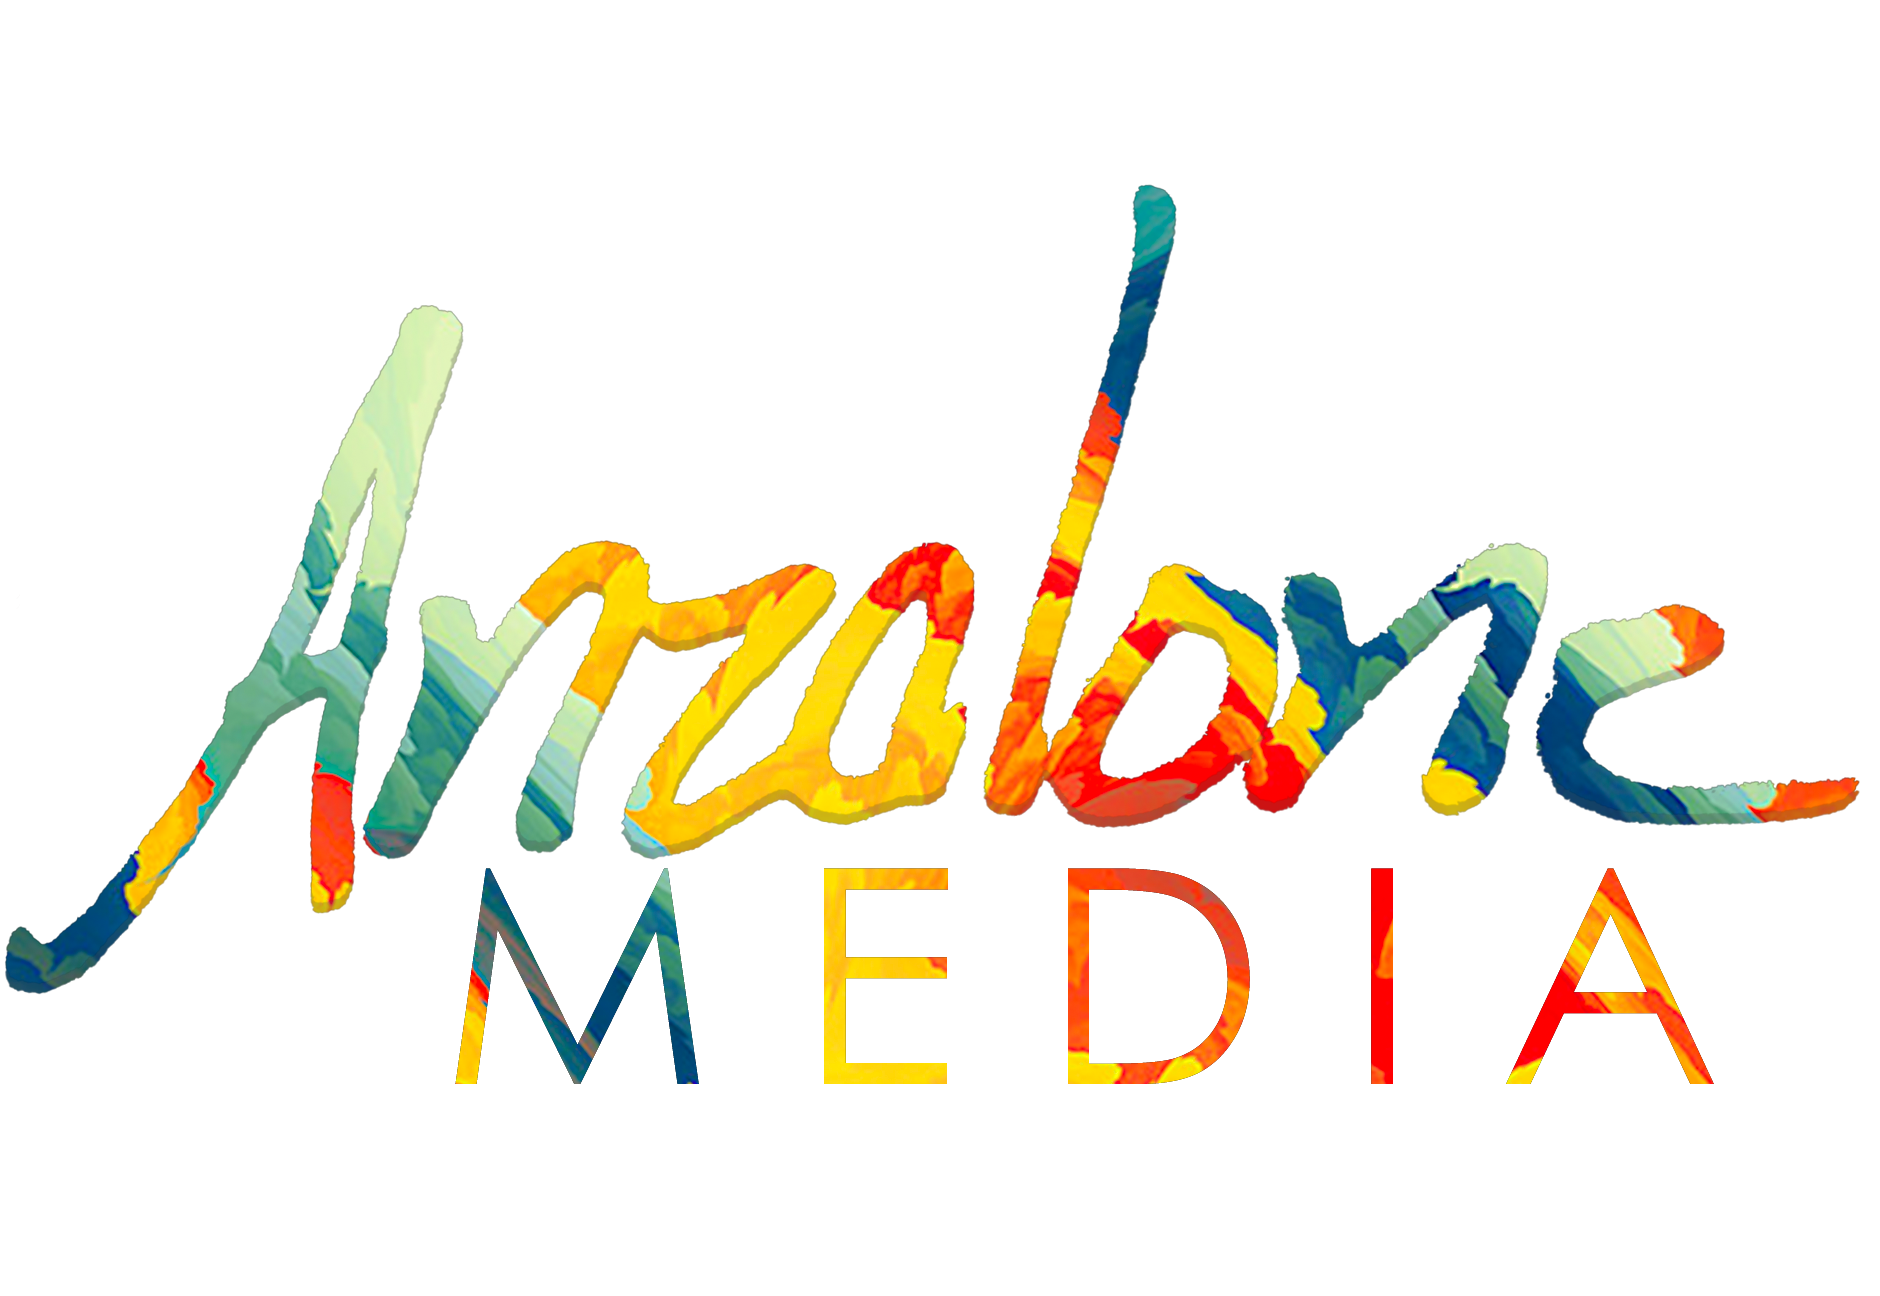 Anzalone Media